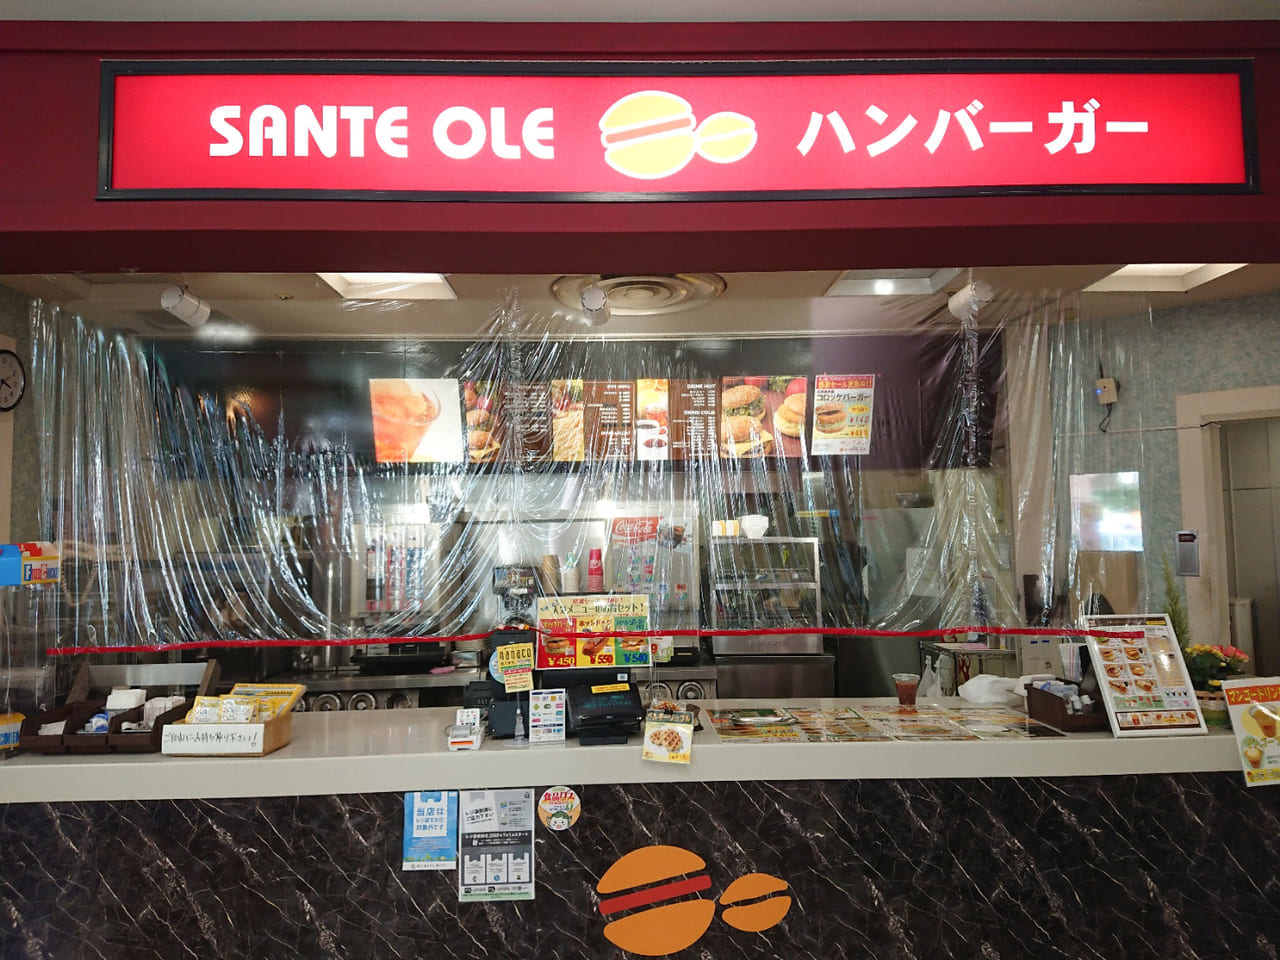 イトーヨーカドー伊勢崎店閉店により、ハンバーガーチェーン「サンテオレ」も閉店となります